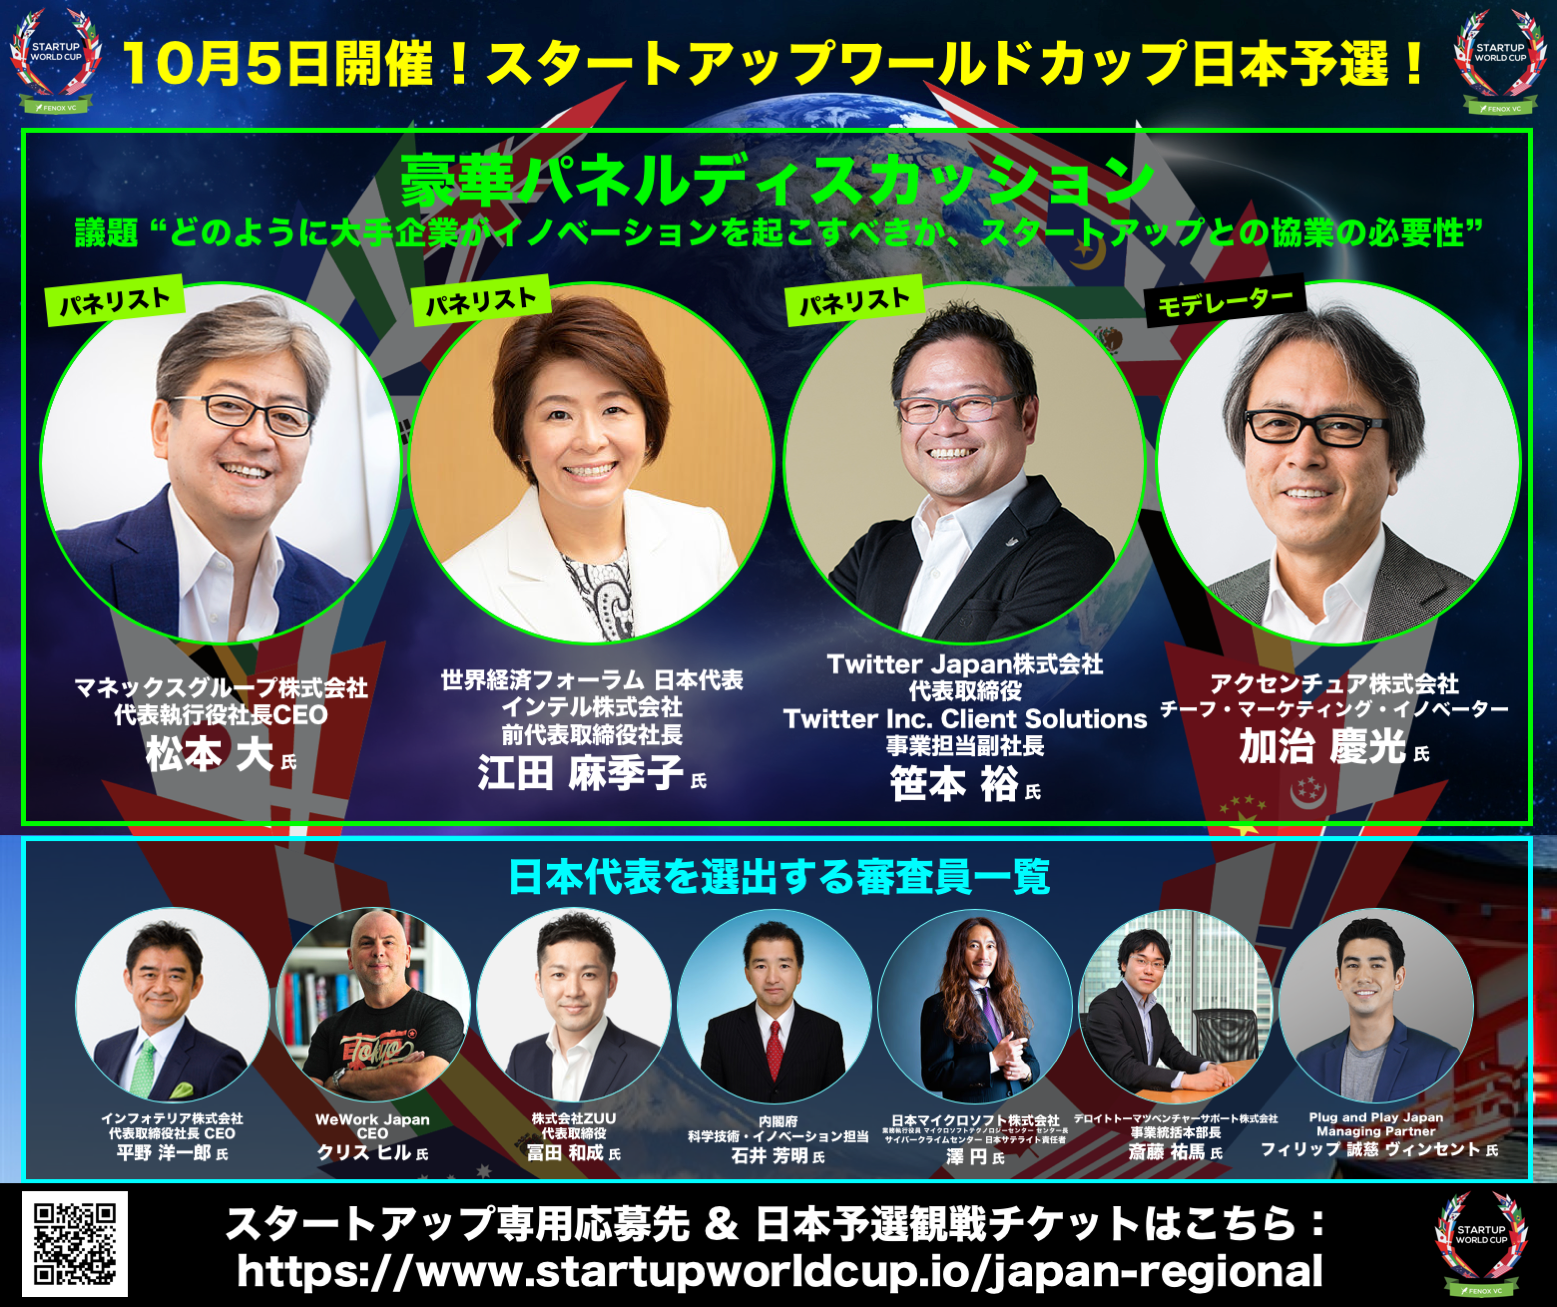 世界最大級のスタートアップコンテスト ビジネスカンファレンス Startup World Cup 19日本地域予選 日本代表の座をかけ10組のスタートアップがついに決定 株式会社フェノックス ベンチャーキャピタル ジャパンのプレスリリース